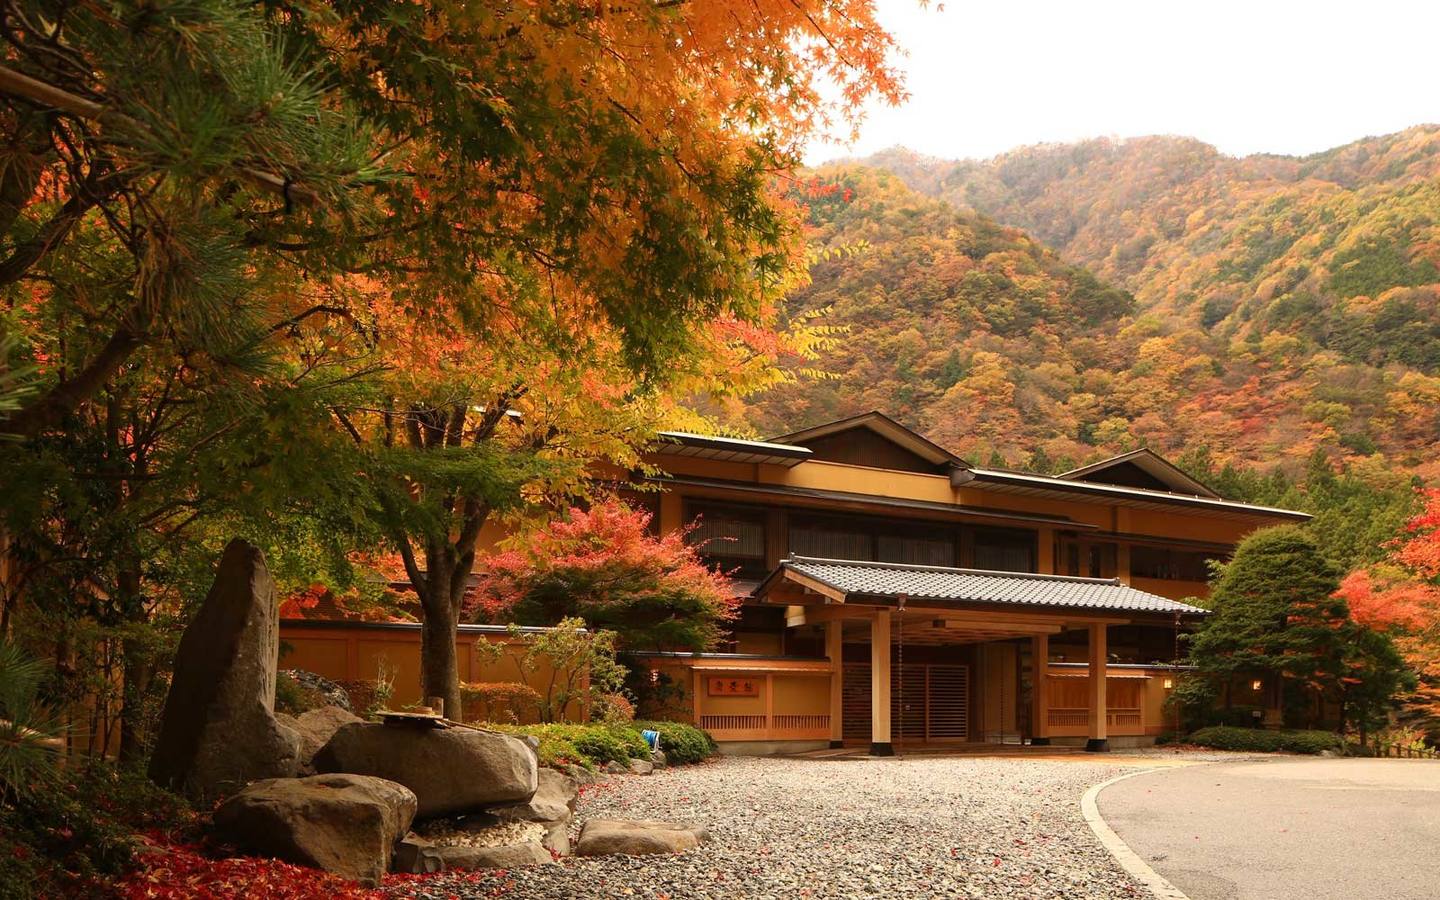 Famosos samuráis en épocas de guerra acudían al hotel Nishiyama Onsen Keiunkan para curar sus heridas y sus problemas musculares. Sus 1.313 años de antigüedad acumulan cientos, miles, de historias.